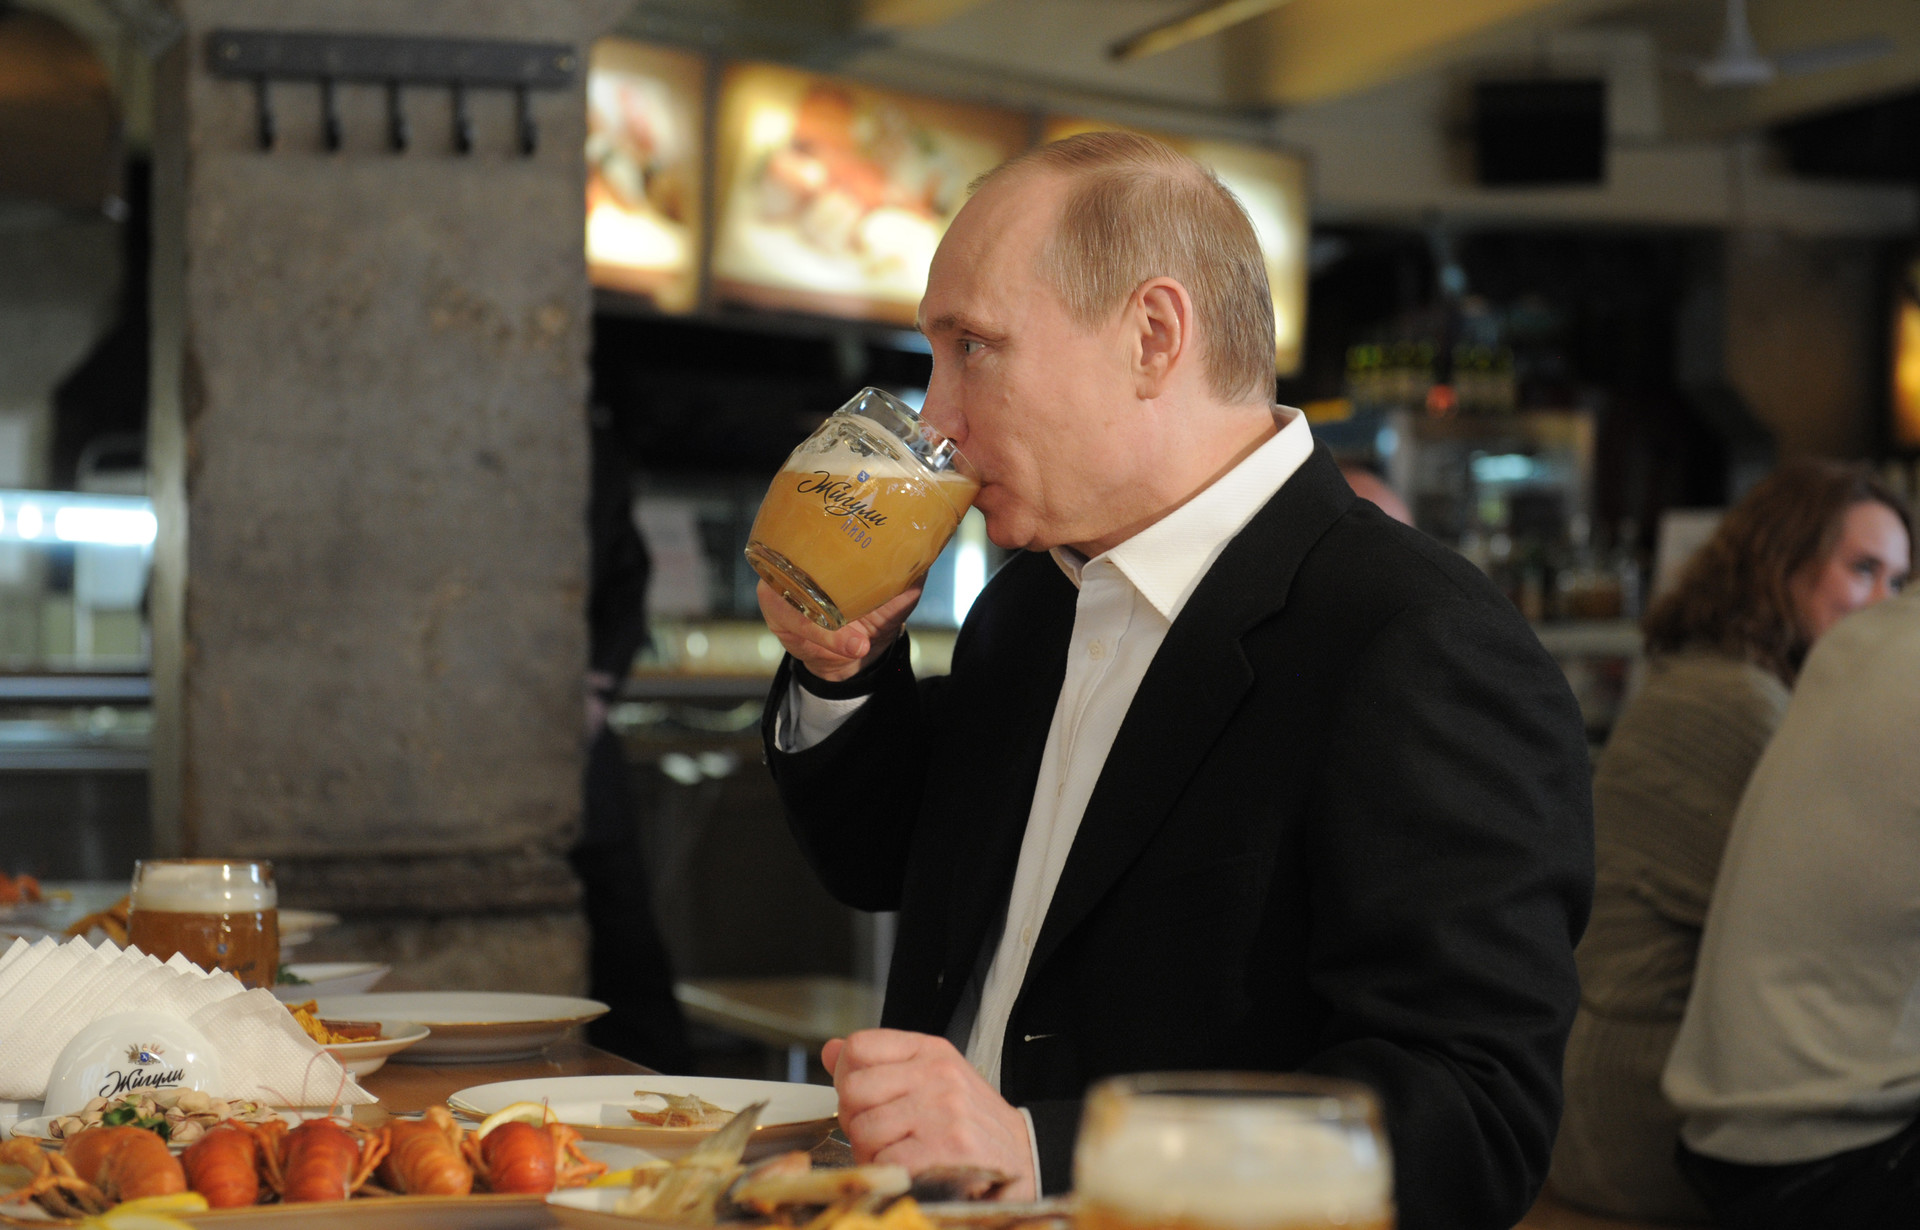 Vladimir Poutine le 1er mai 2012 buvant de la bière au bar Jigouli sur le Nouvel Arbat